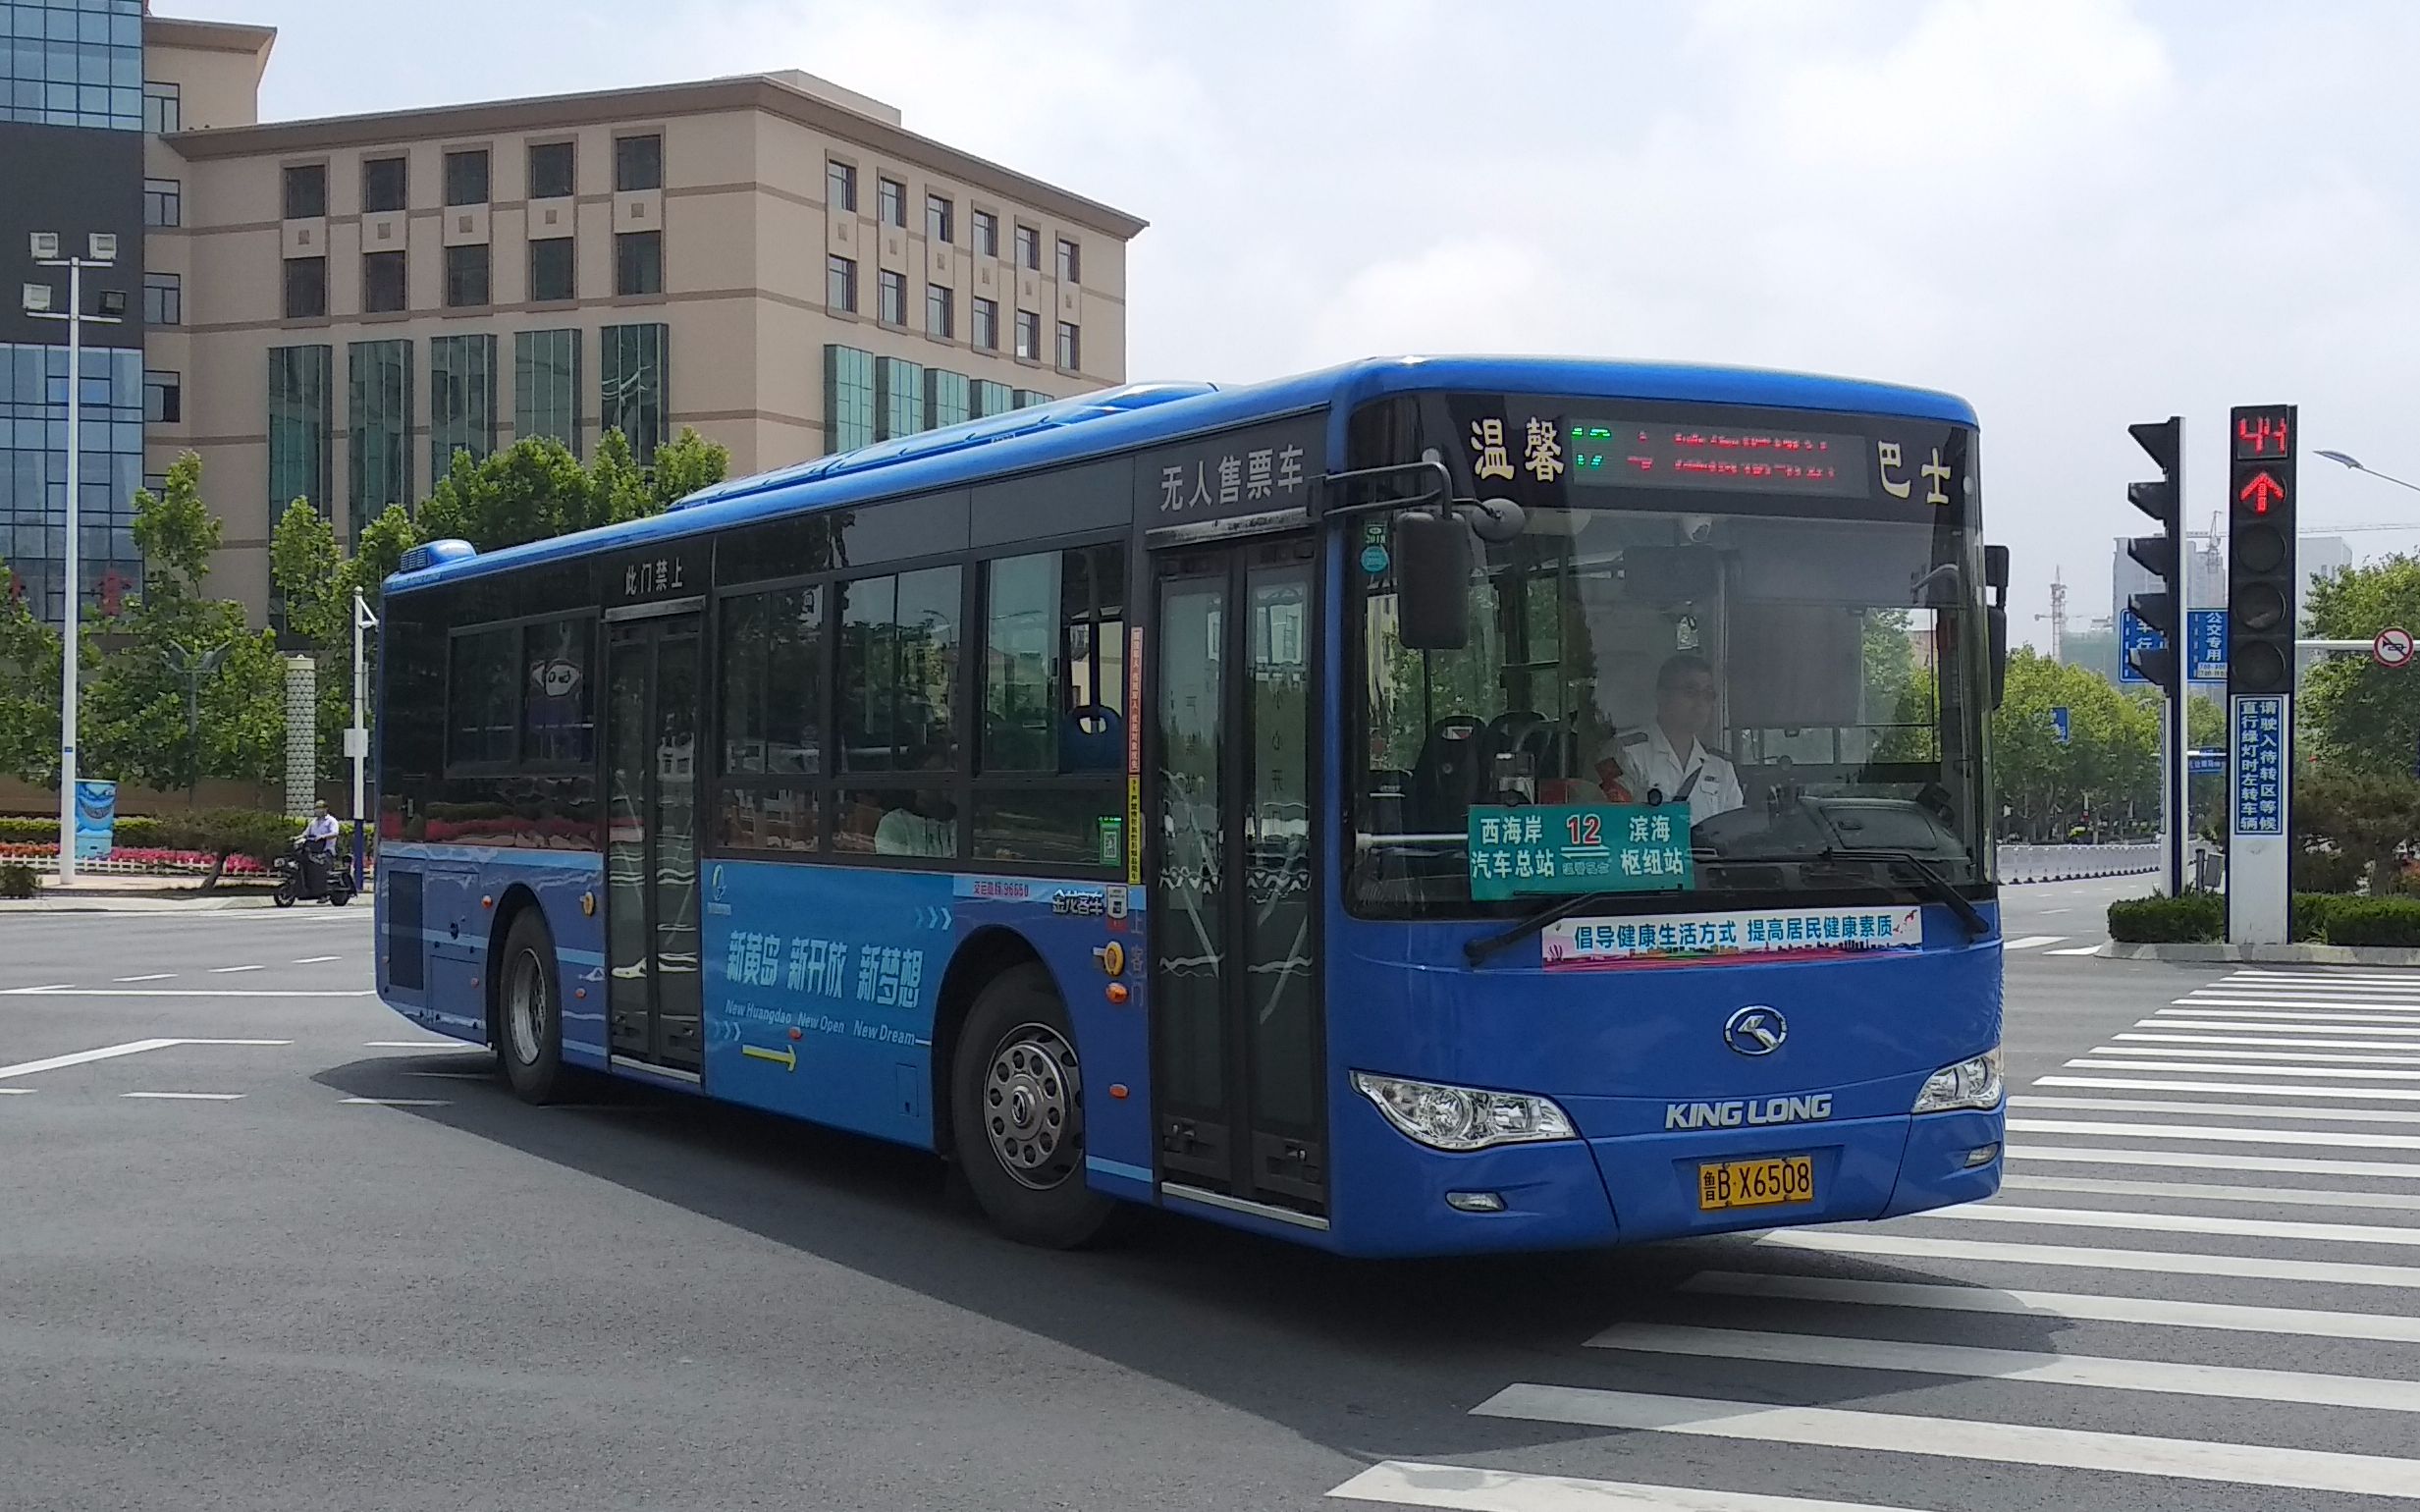 【归梦胶济pov第014】青岛交运集团西海岸温馨巴士公司西12路(滨海